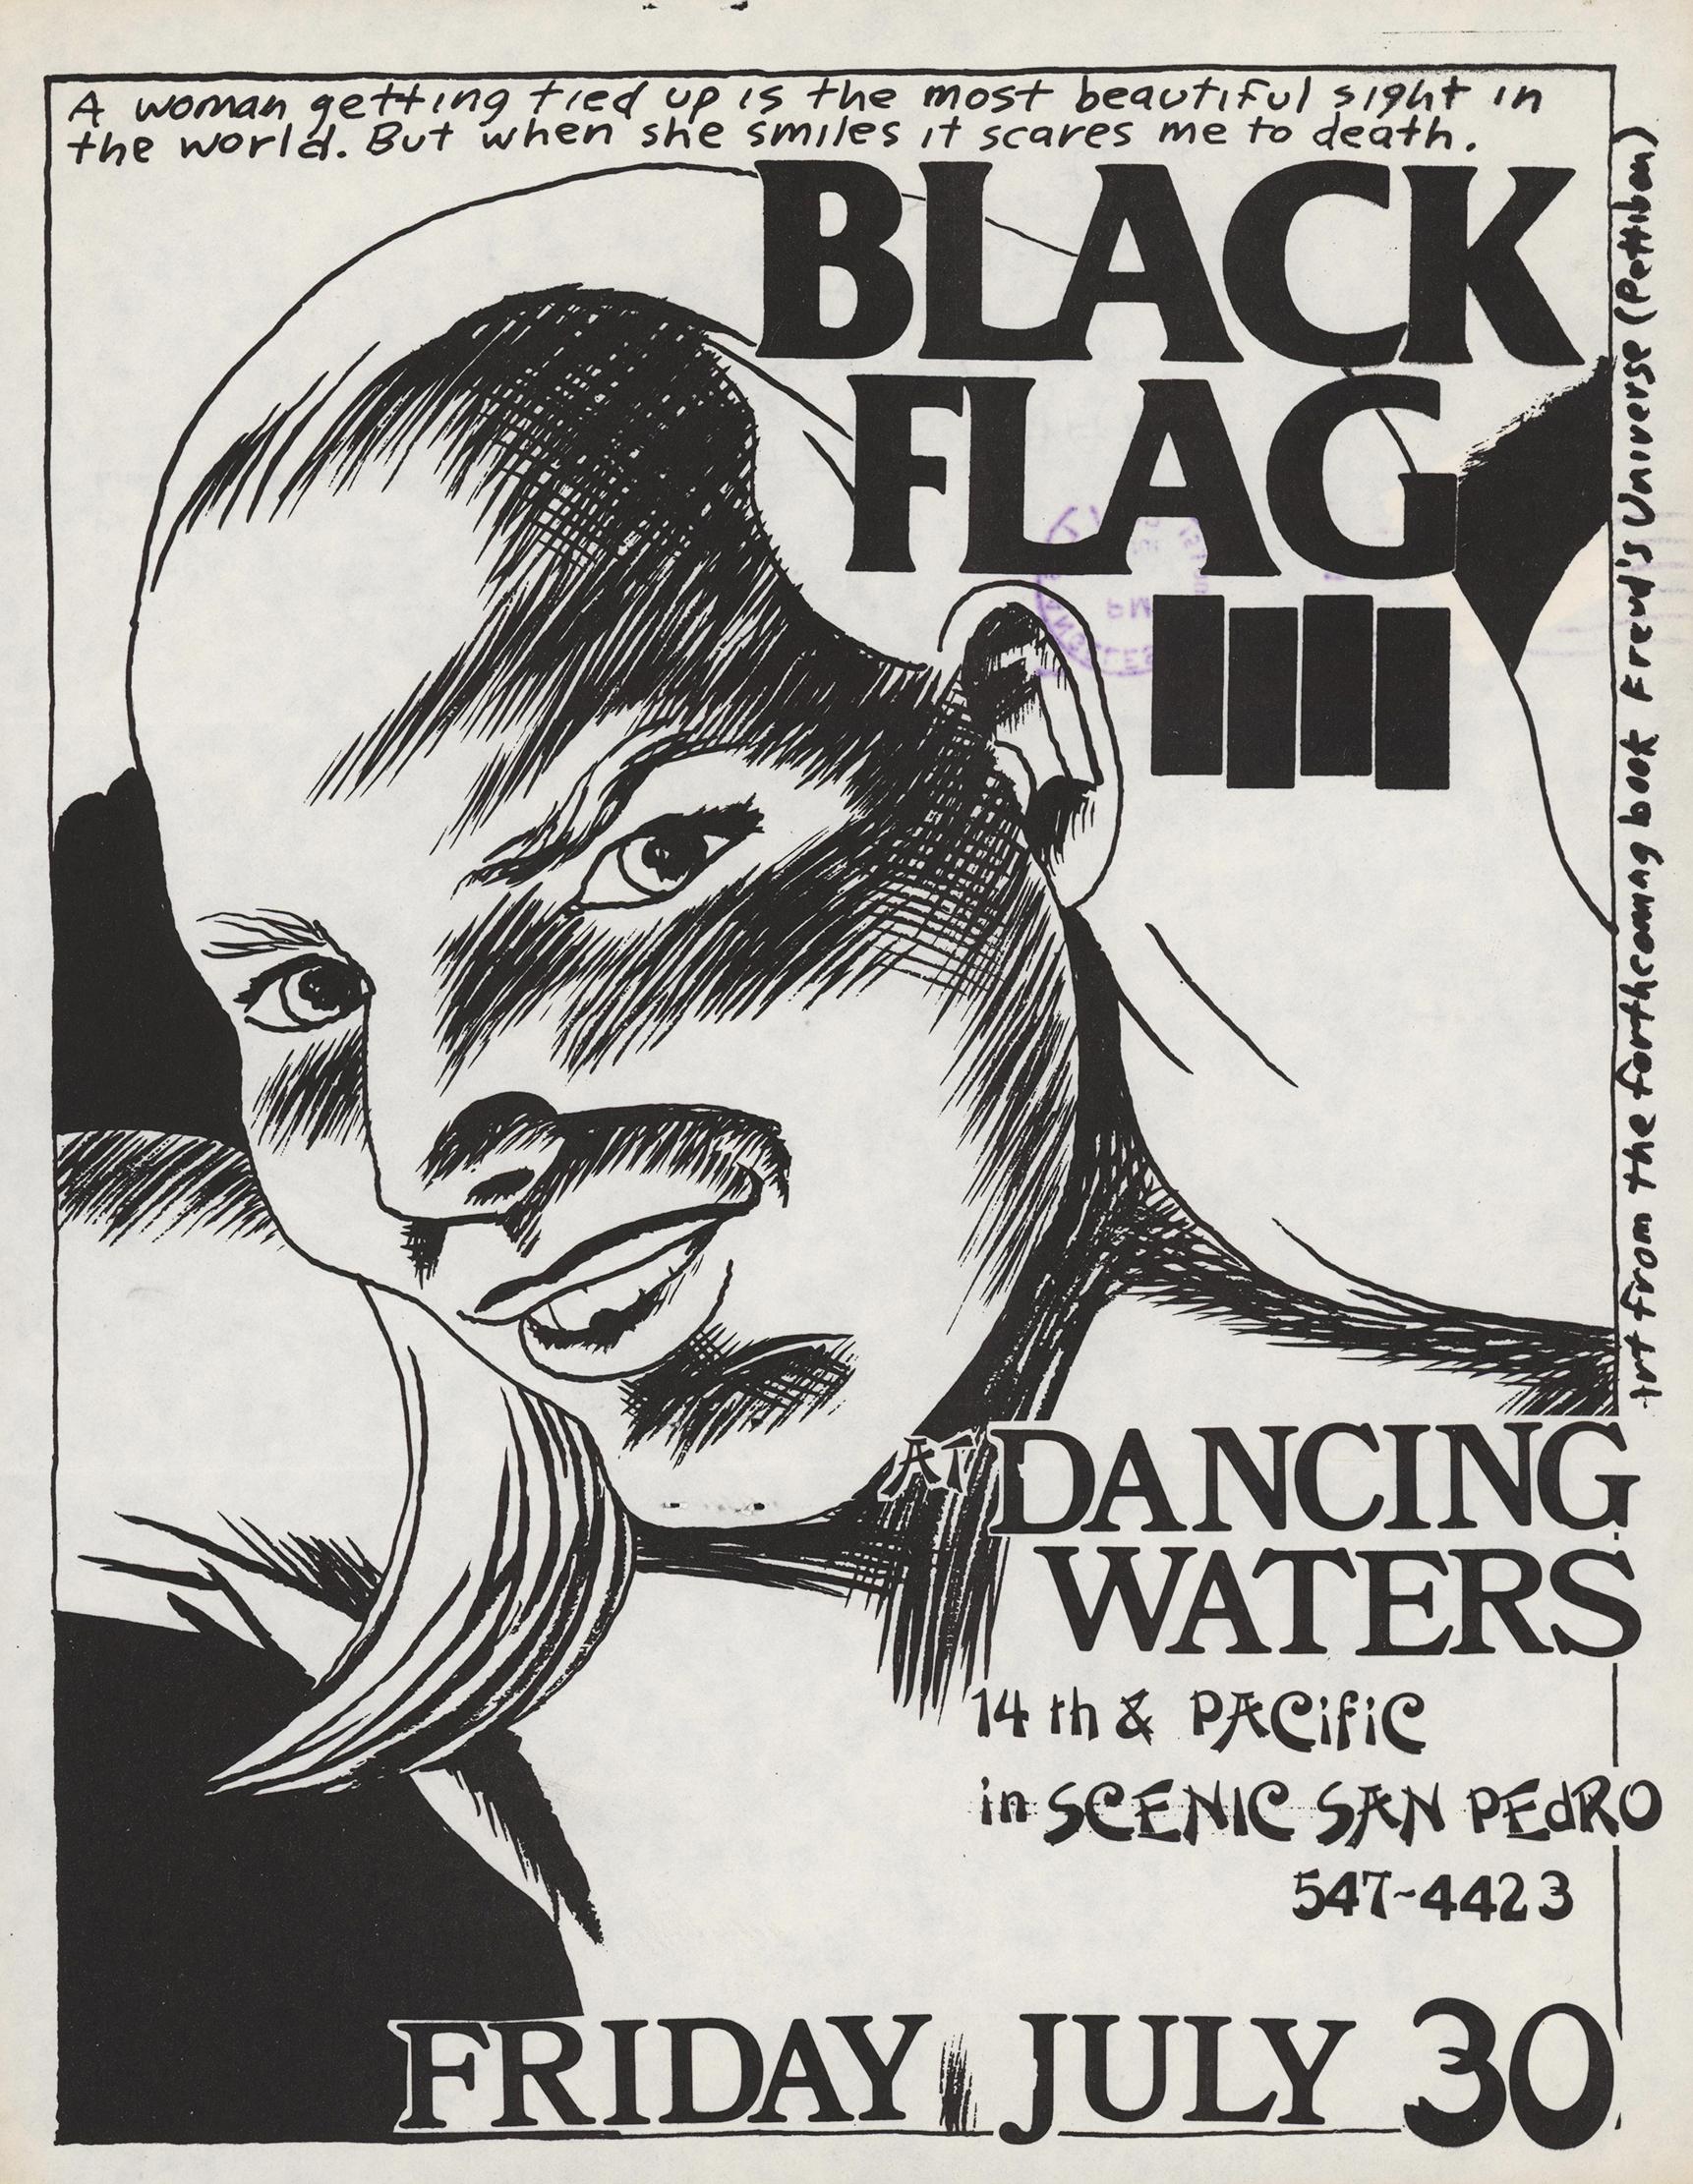 Raymond Pettibon Schwarze Flagge 1982:
Seltener Original-Punk-Flyer mit Pettibon-Grafiken für einen Auftritt von Black Flag im Dancing Waters am Freitag, den 30. Juli 1982. 

Ein äußerst seltenes Exemplar, das auf der Rückseite von Black Flags